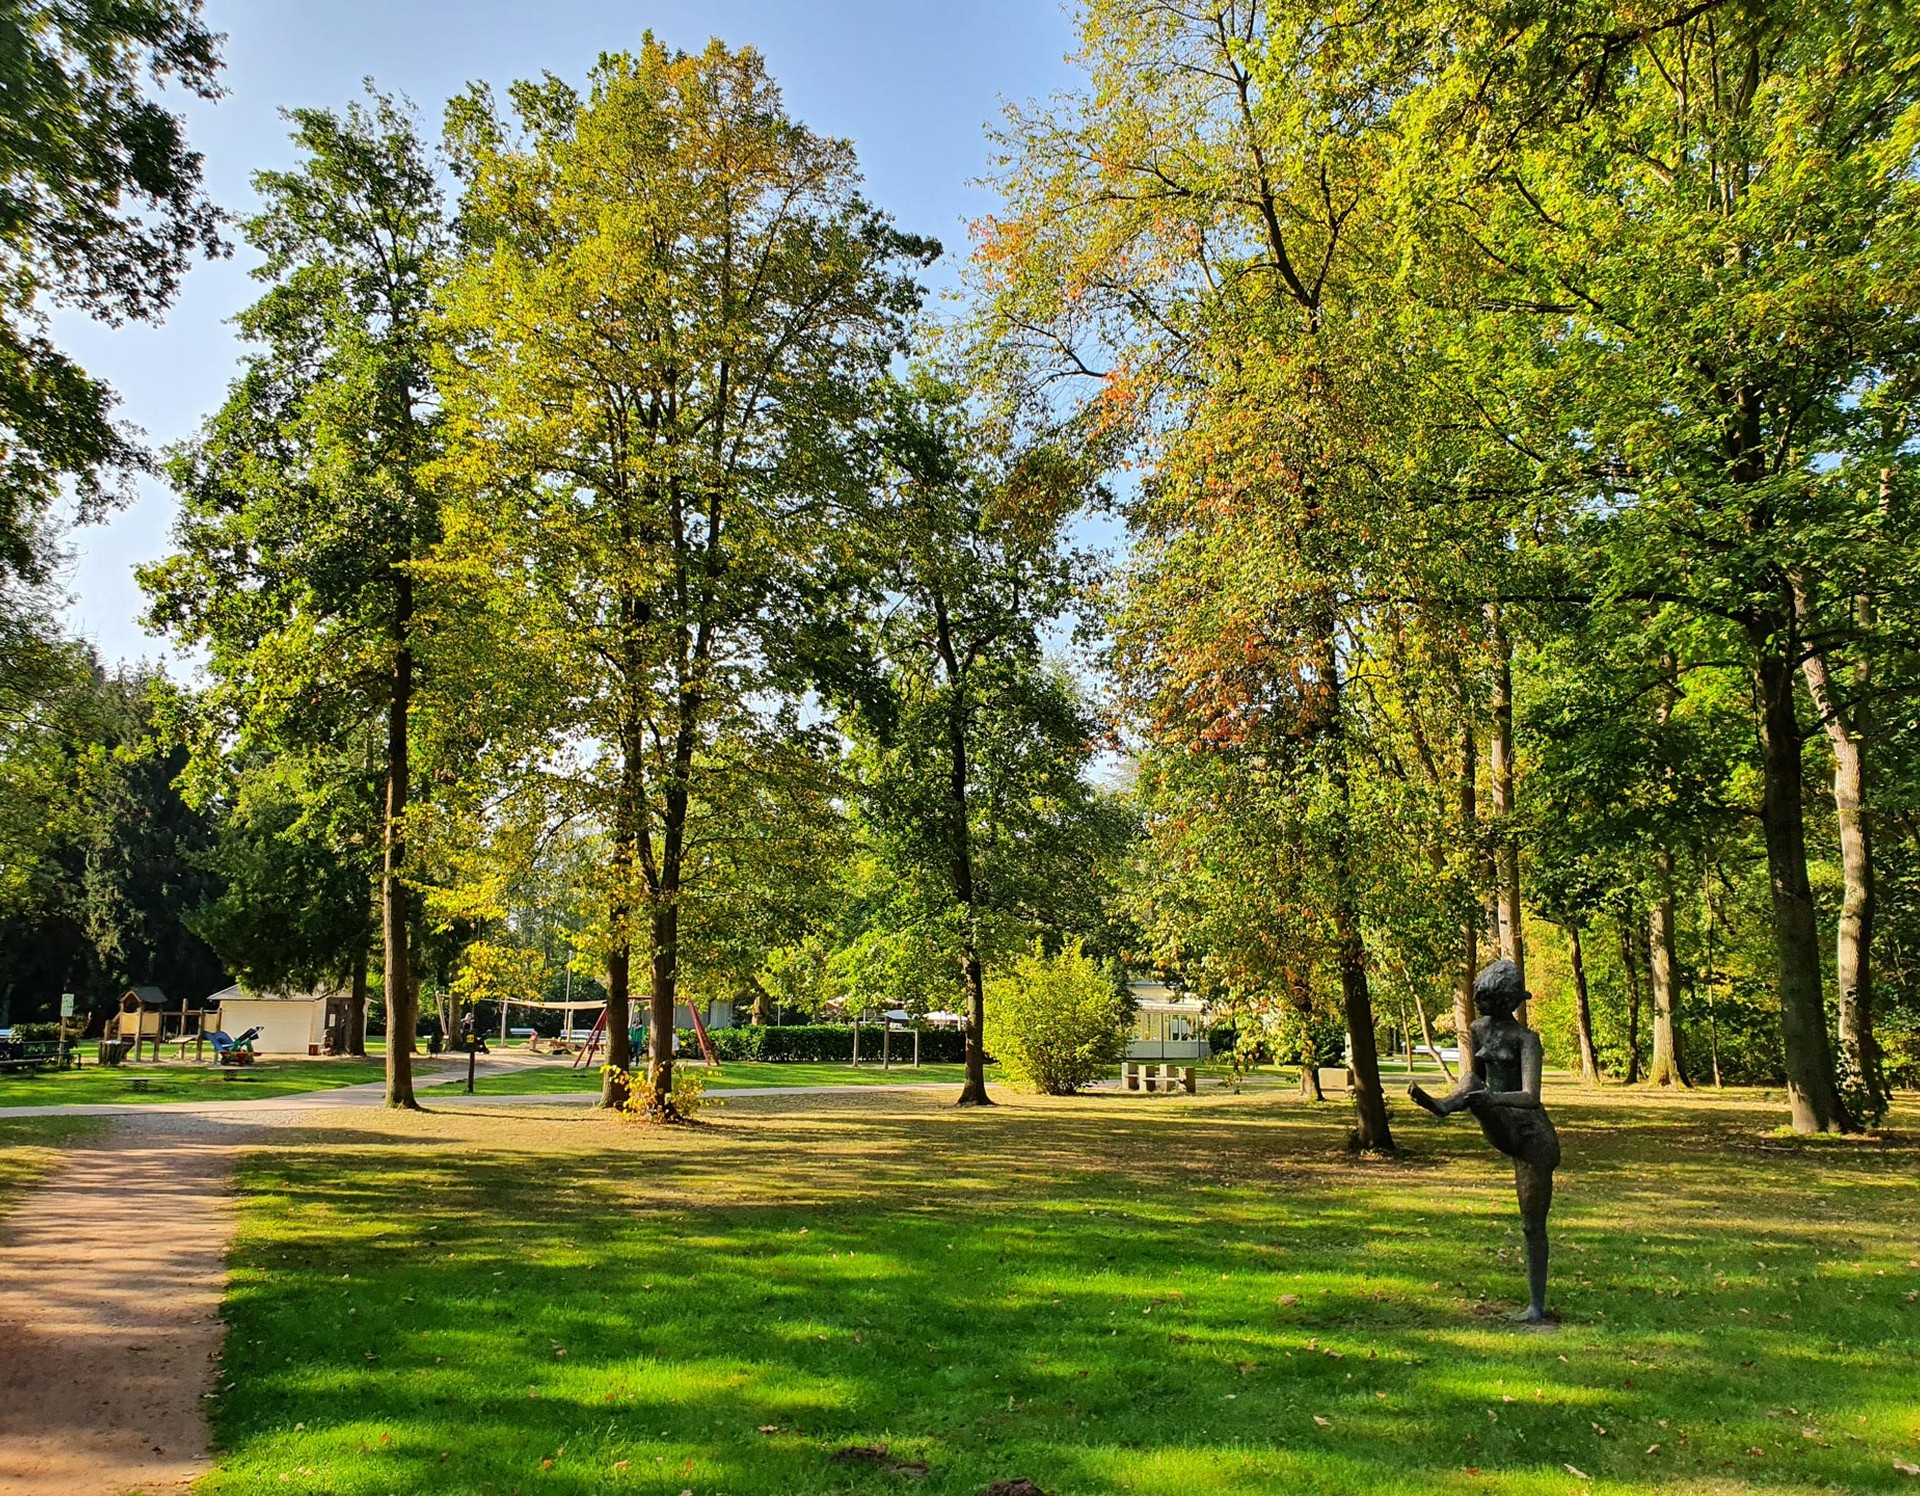 Blick in den Kurpark Bad Liesborn. Rechts sieht man eine der Bronzeskulpturen im Park, die auf einer Wiese steht. Rundherum stehen Bäume.